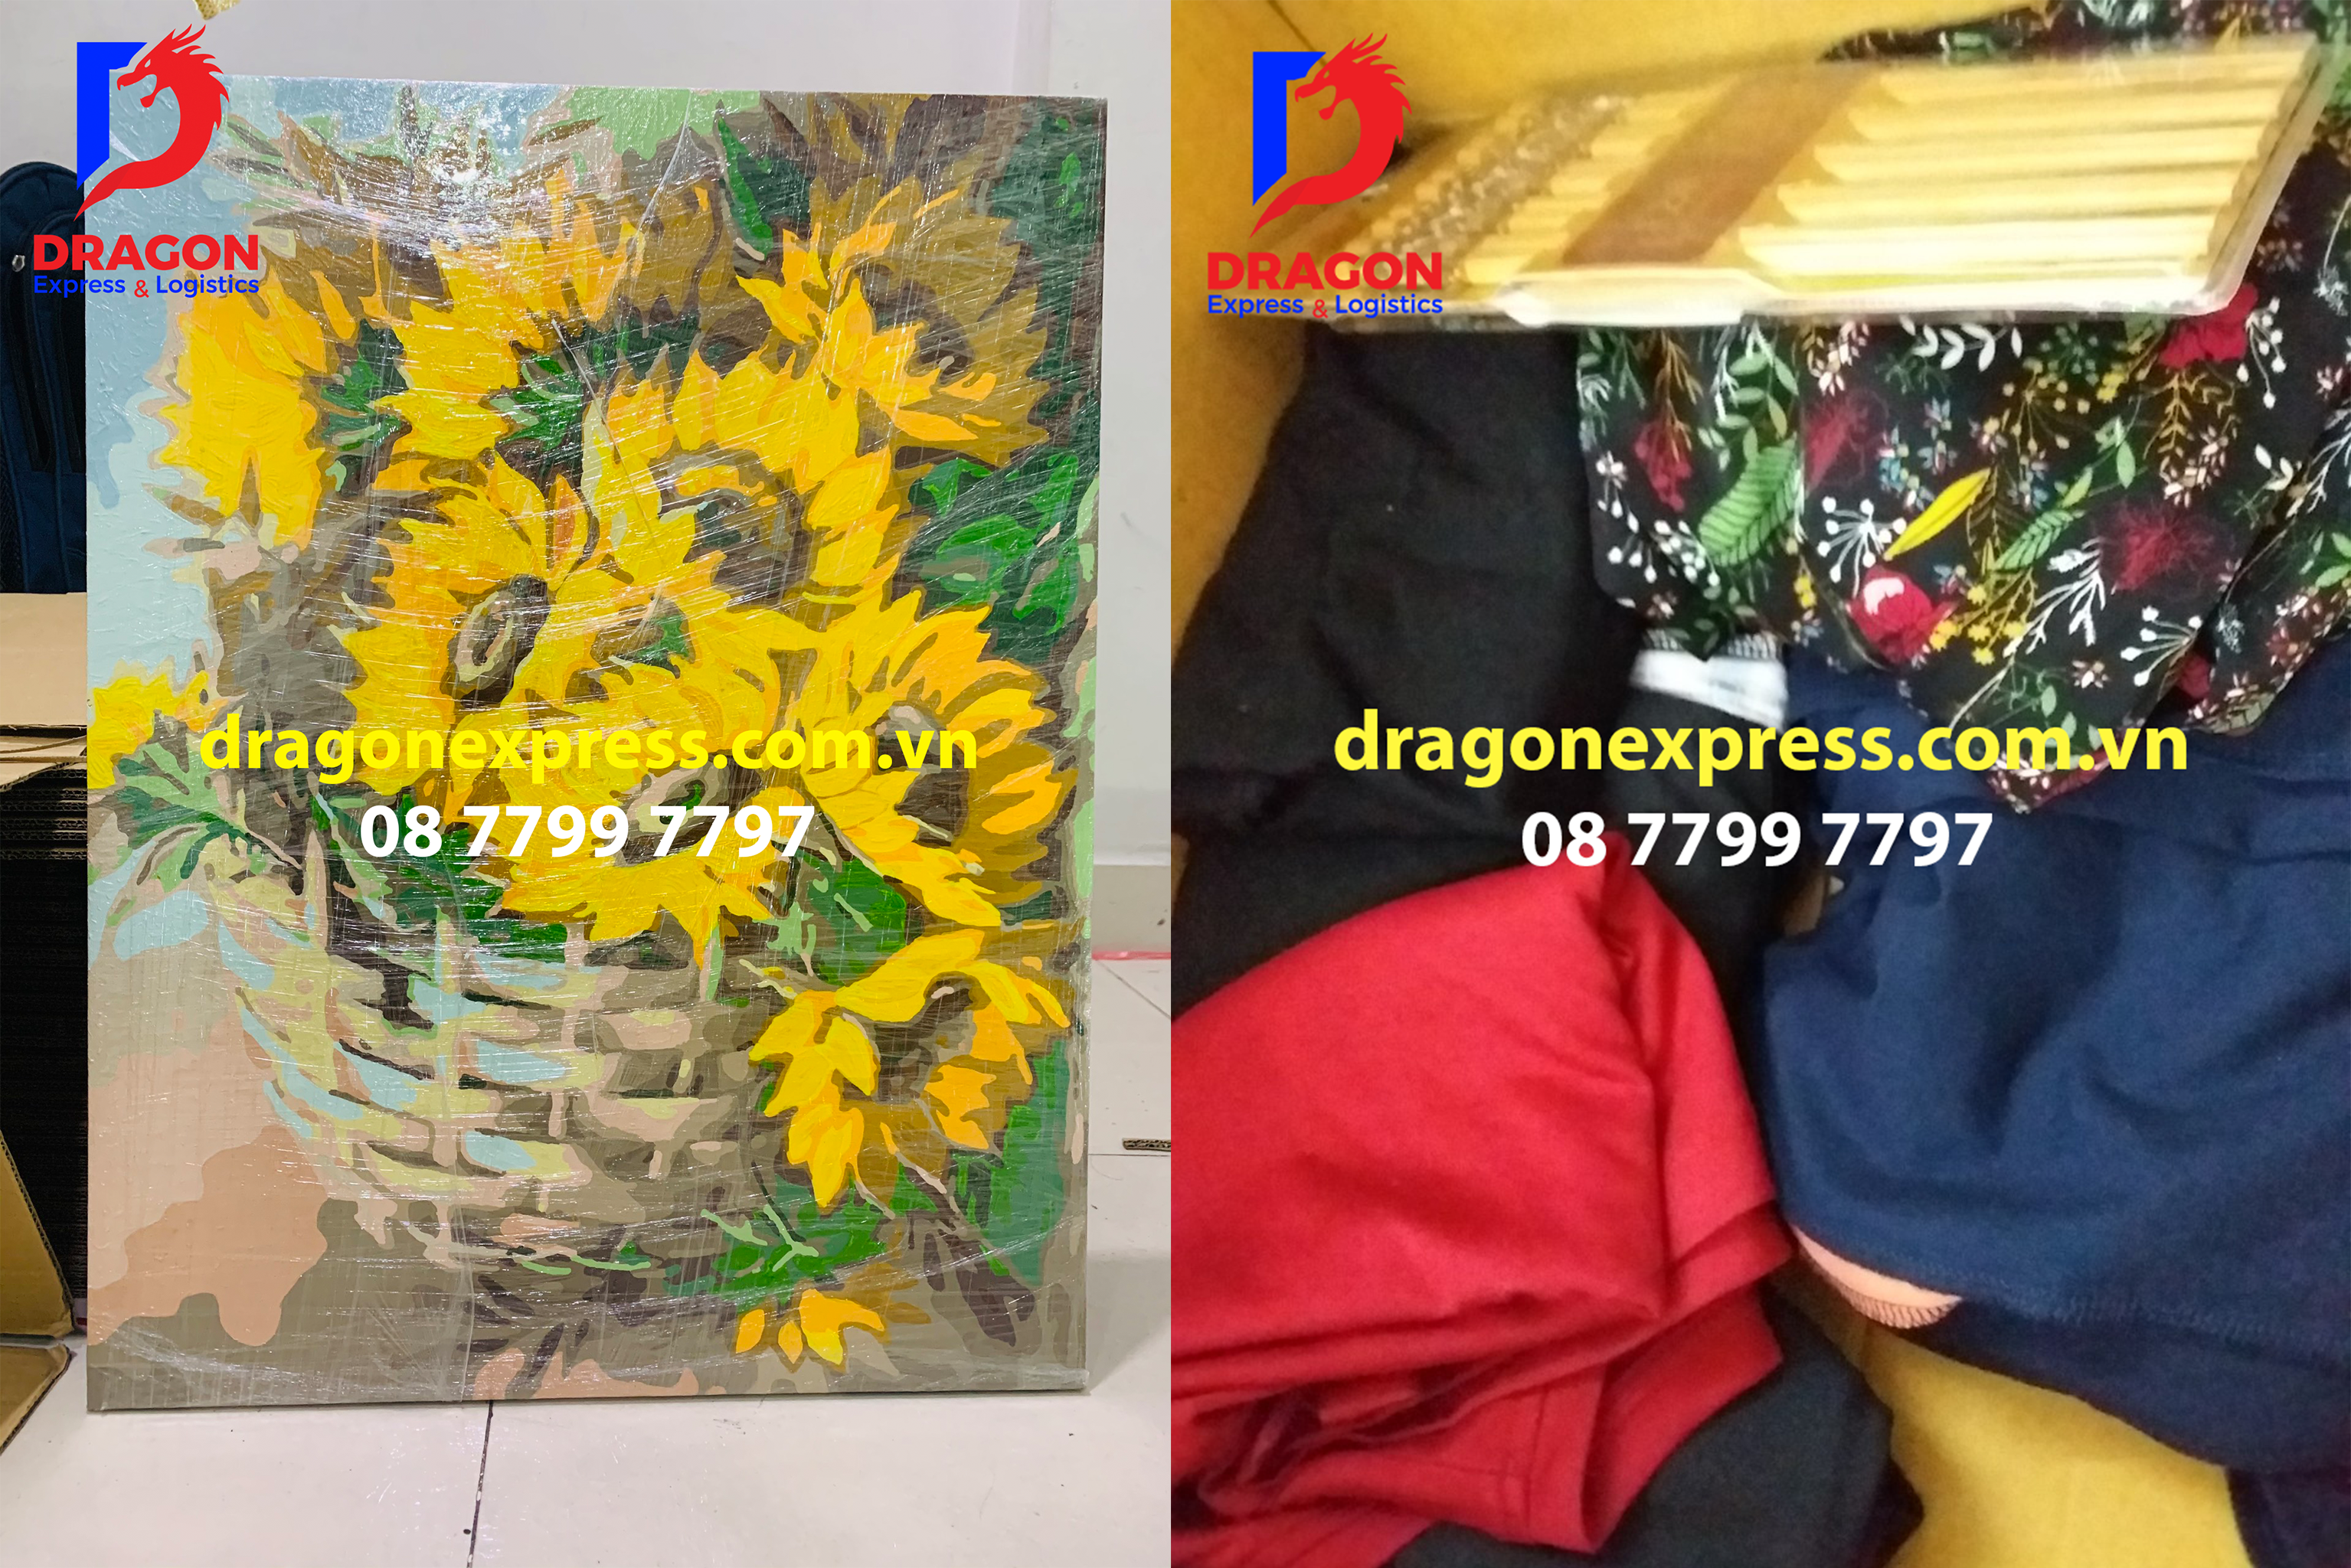 Dragon - nhận gửi đa dạng hàng hóa, đồ thủ công mỹ nghê, quần áo...